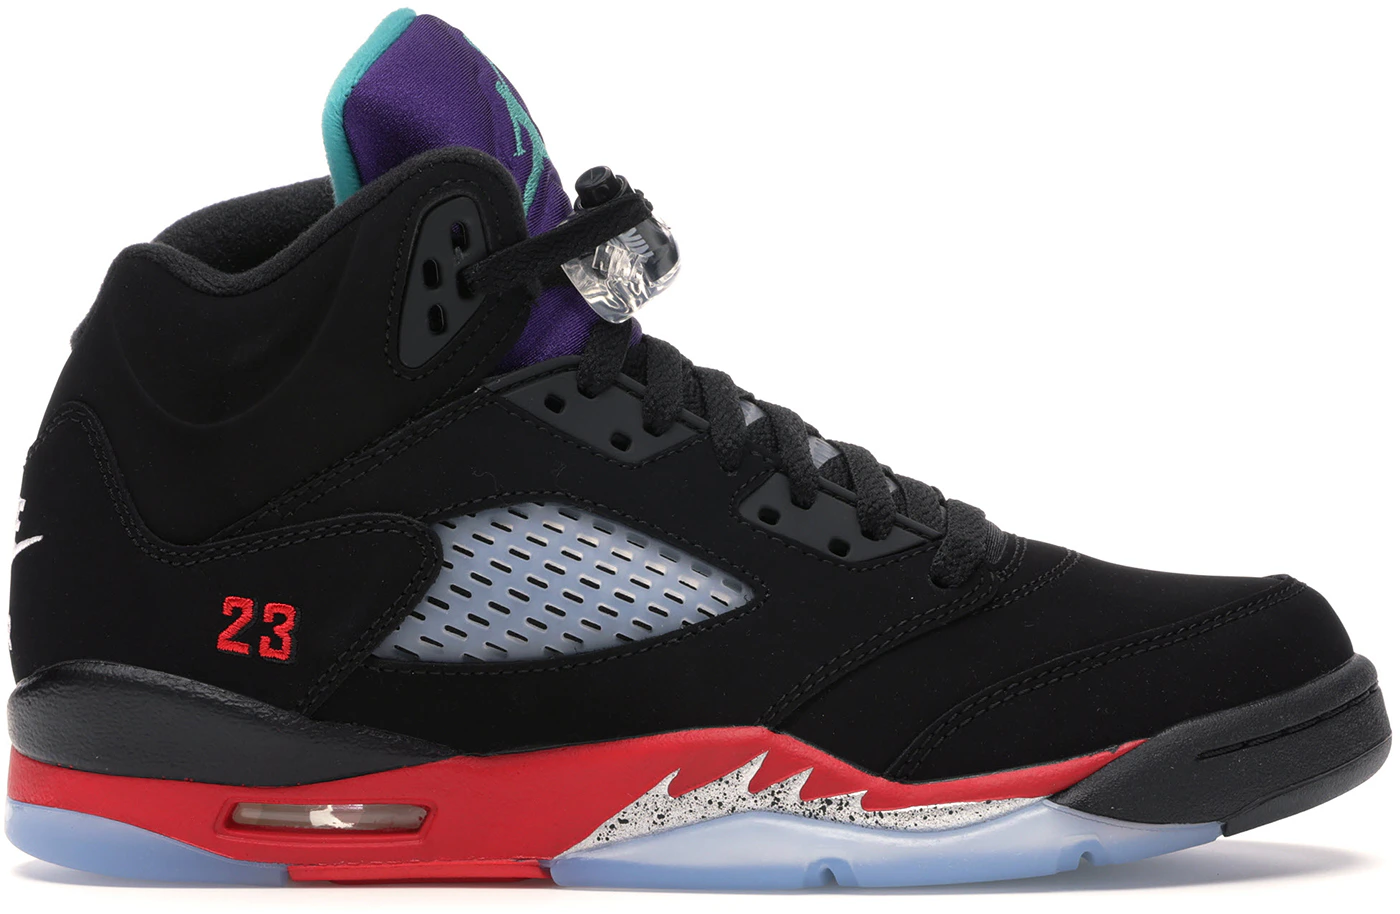 Air Jordan Retro 5 OG Top 3 Black Purple  Air jordans, Air jordans retro,  Retro sneakers